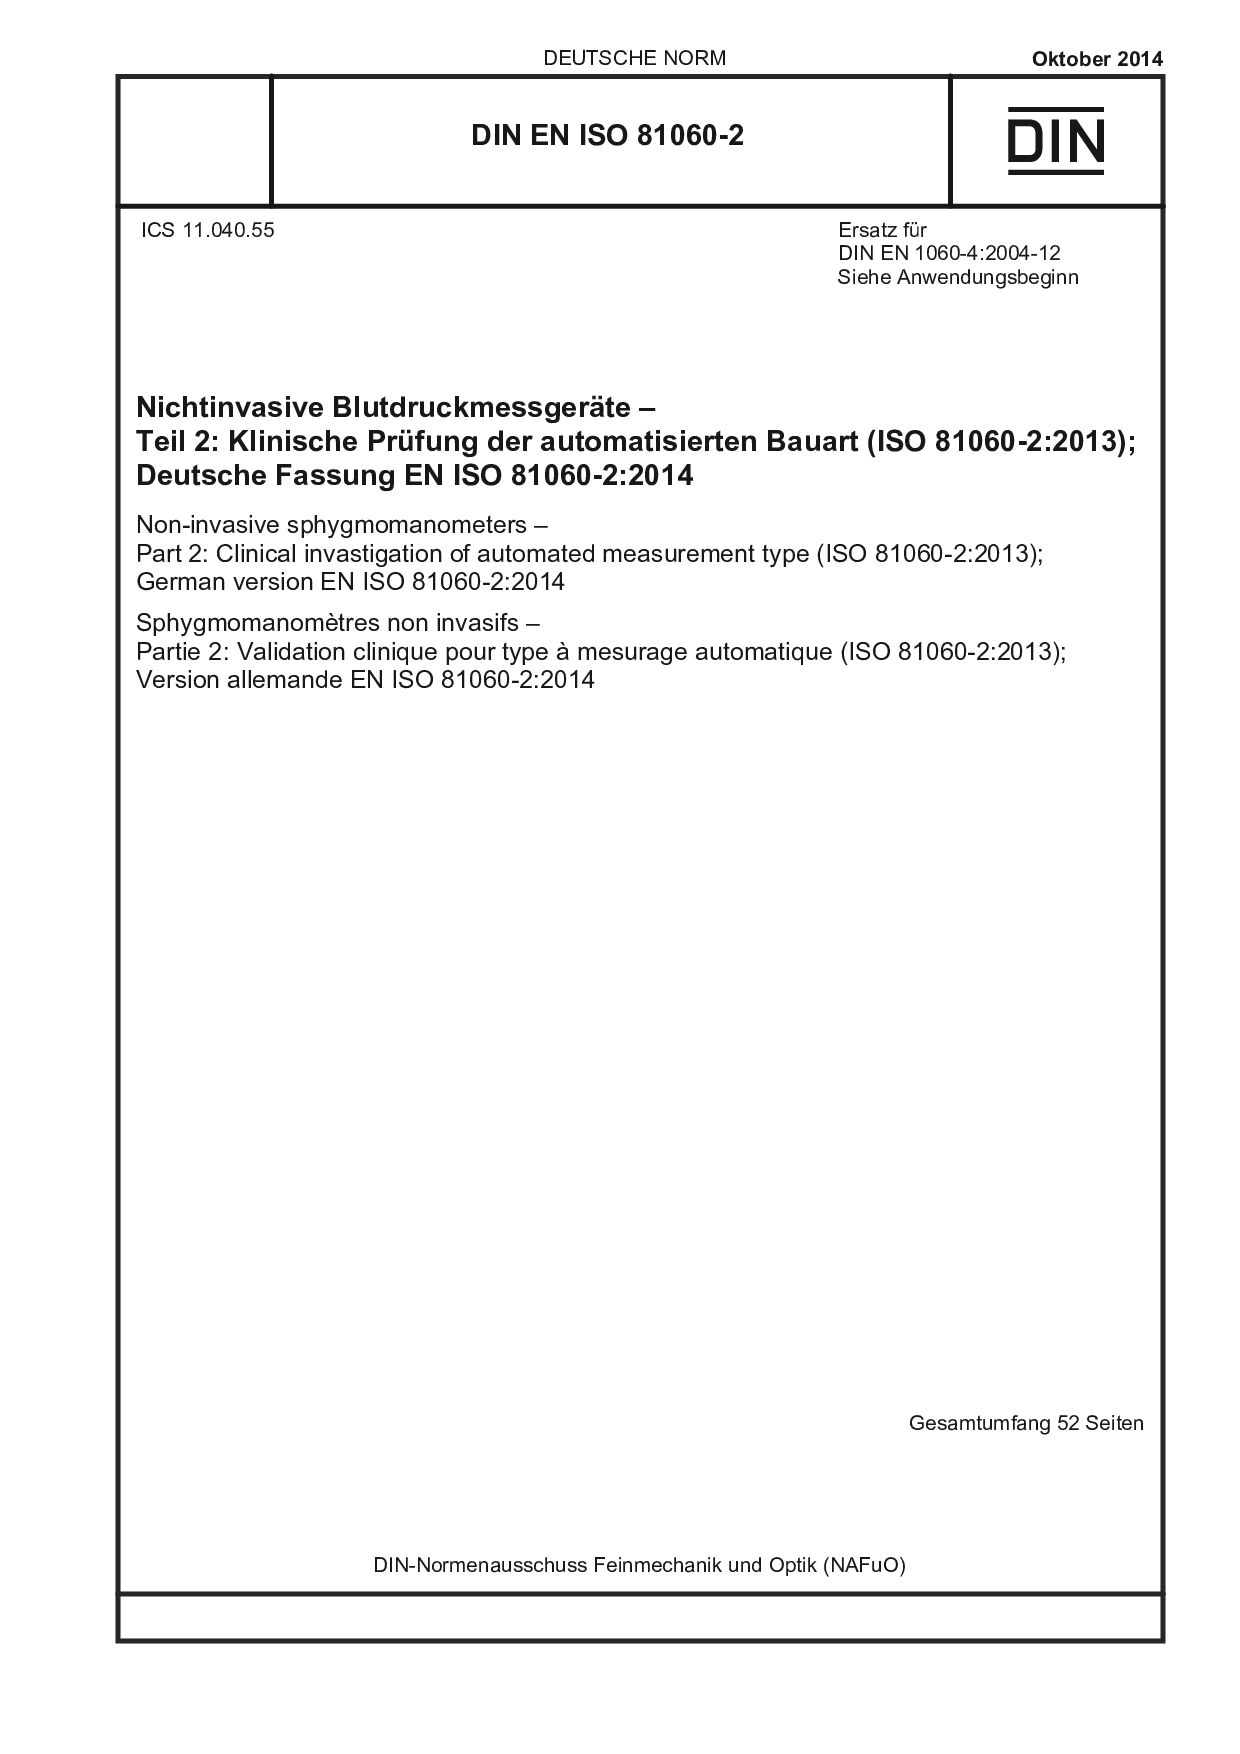 DIN EN ISO 81060-2:2014